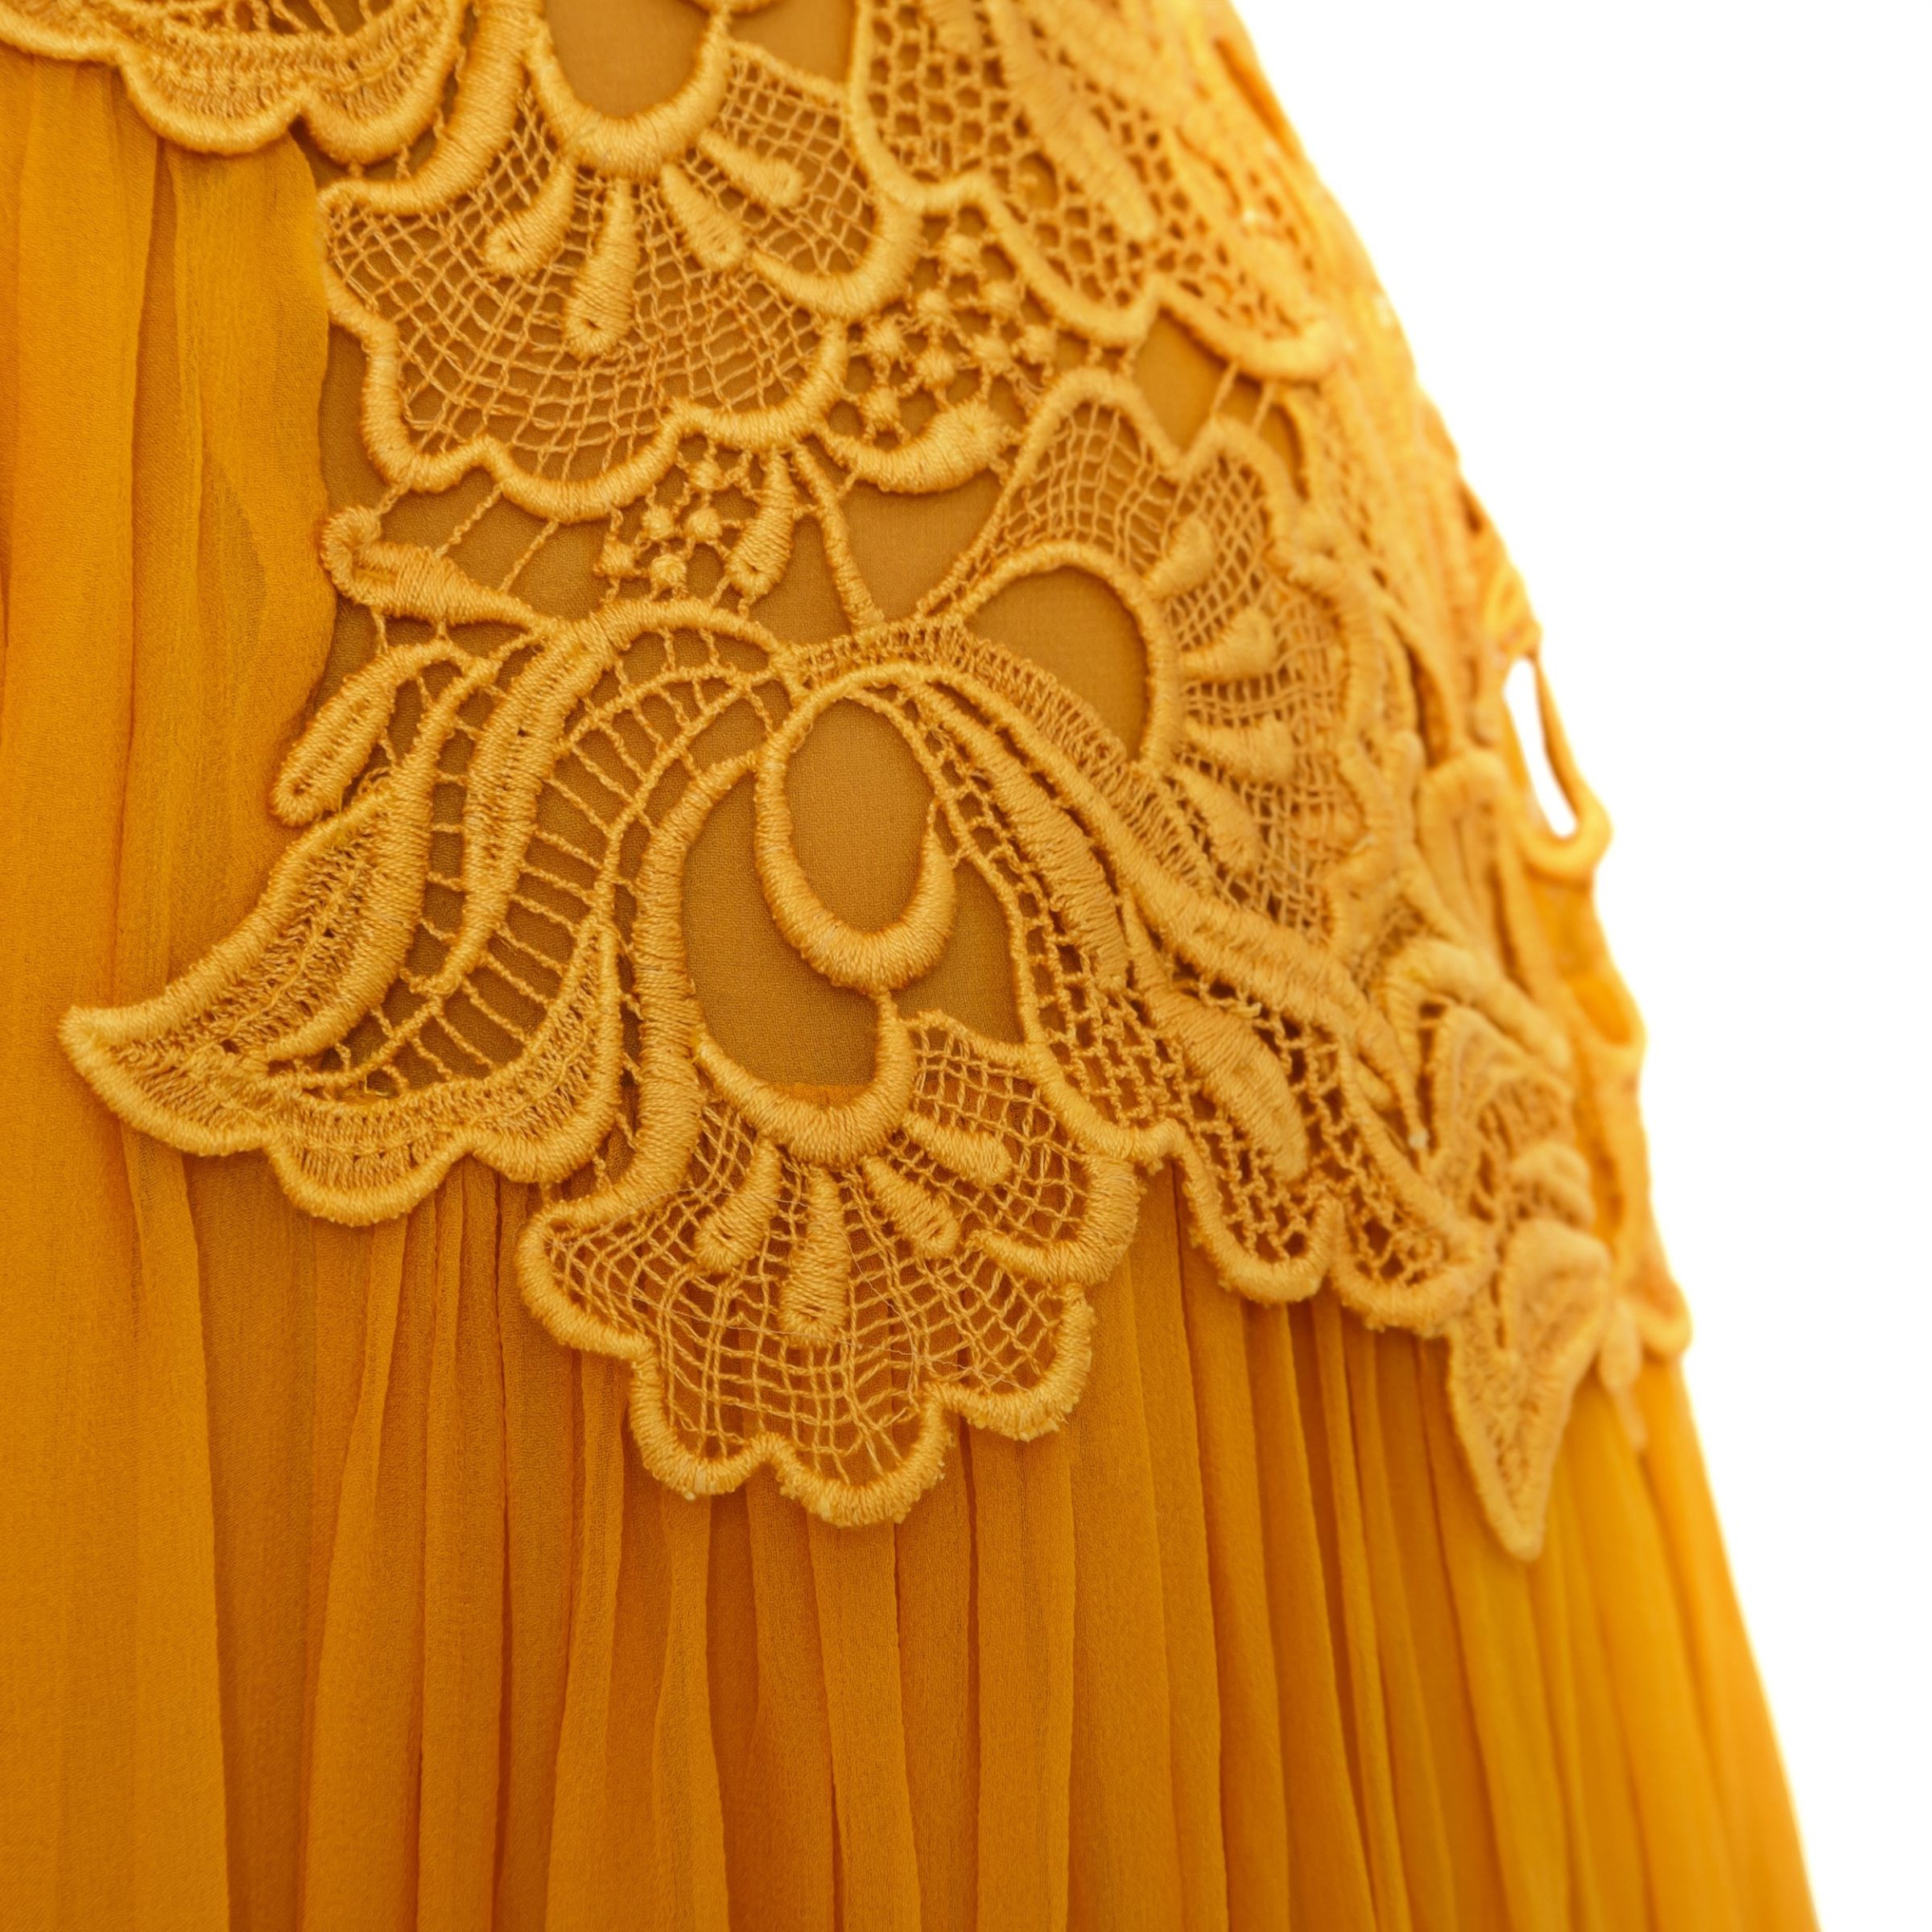 Платье Alberta Ferretti Longuette желтое